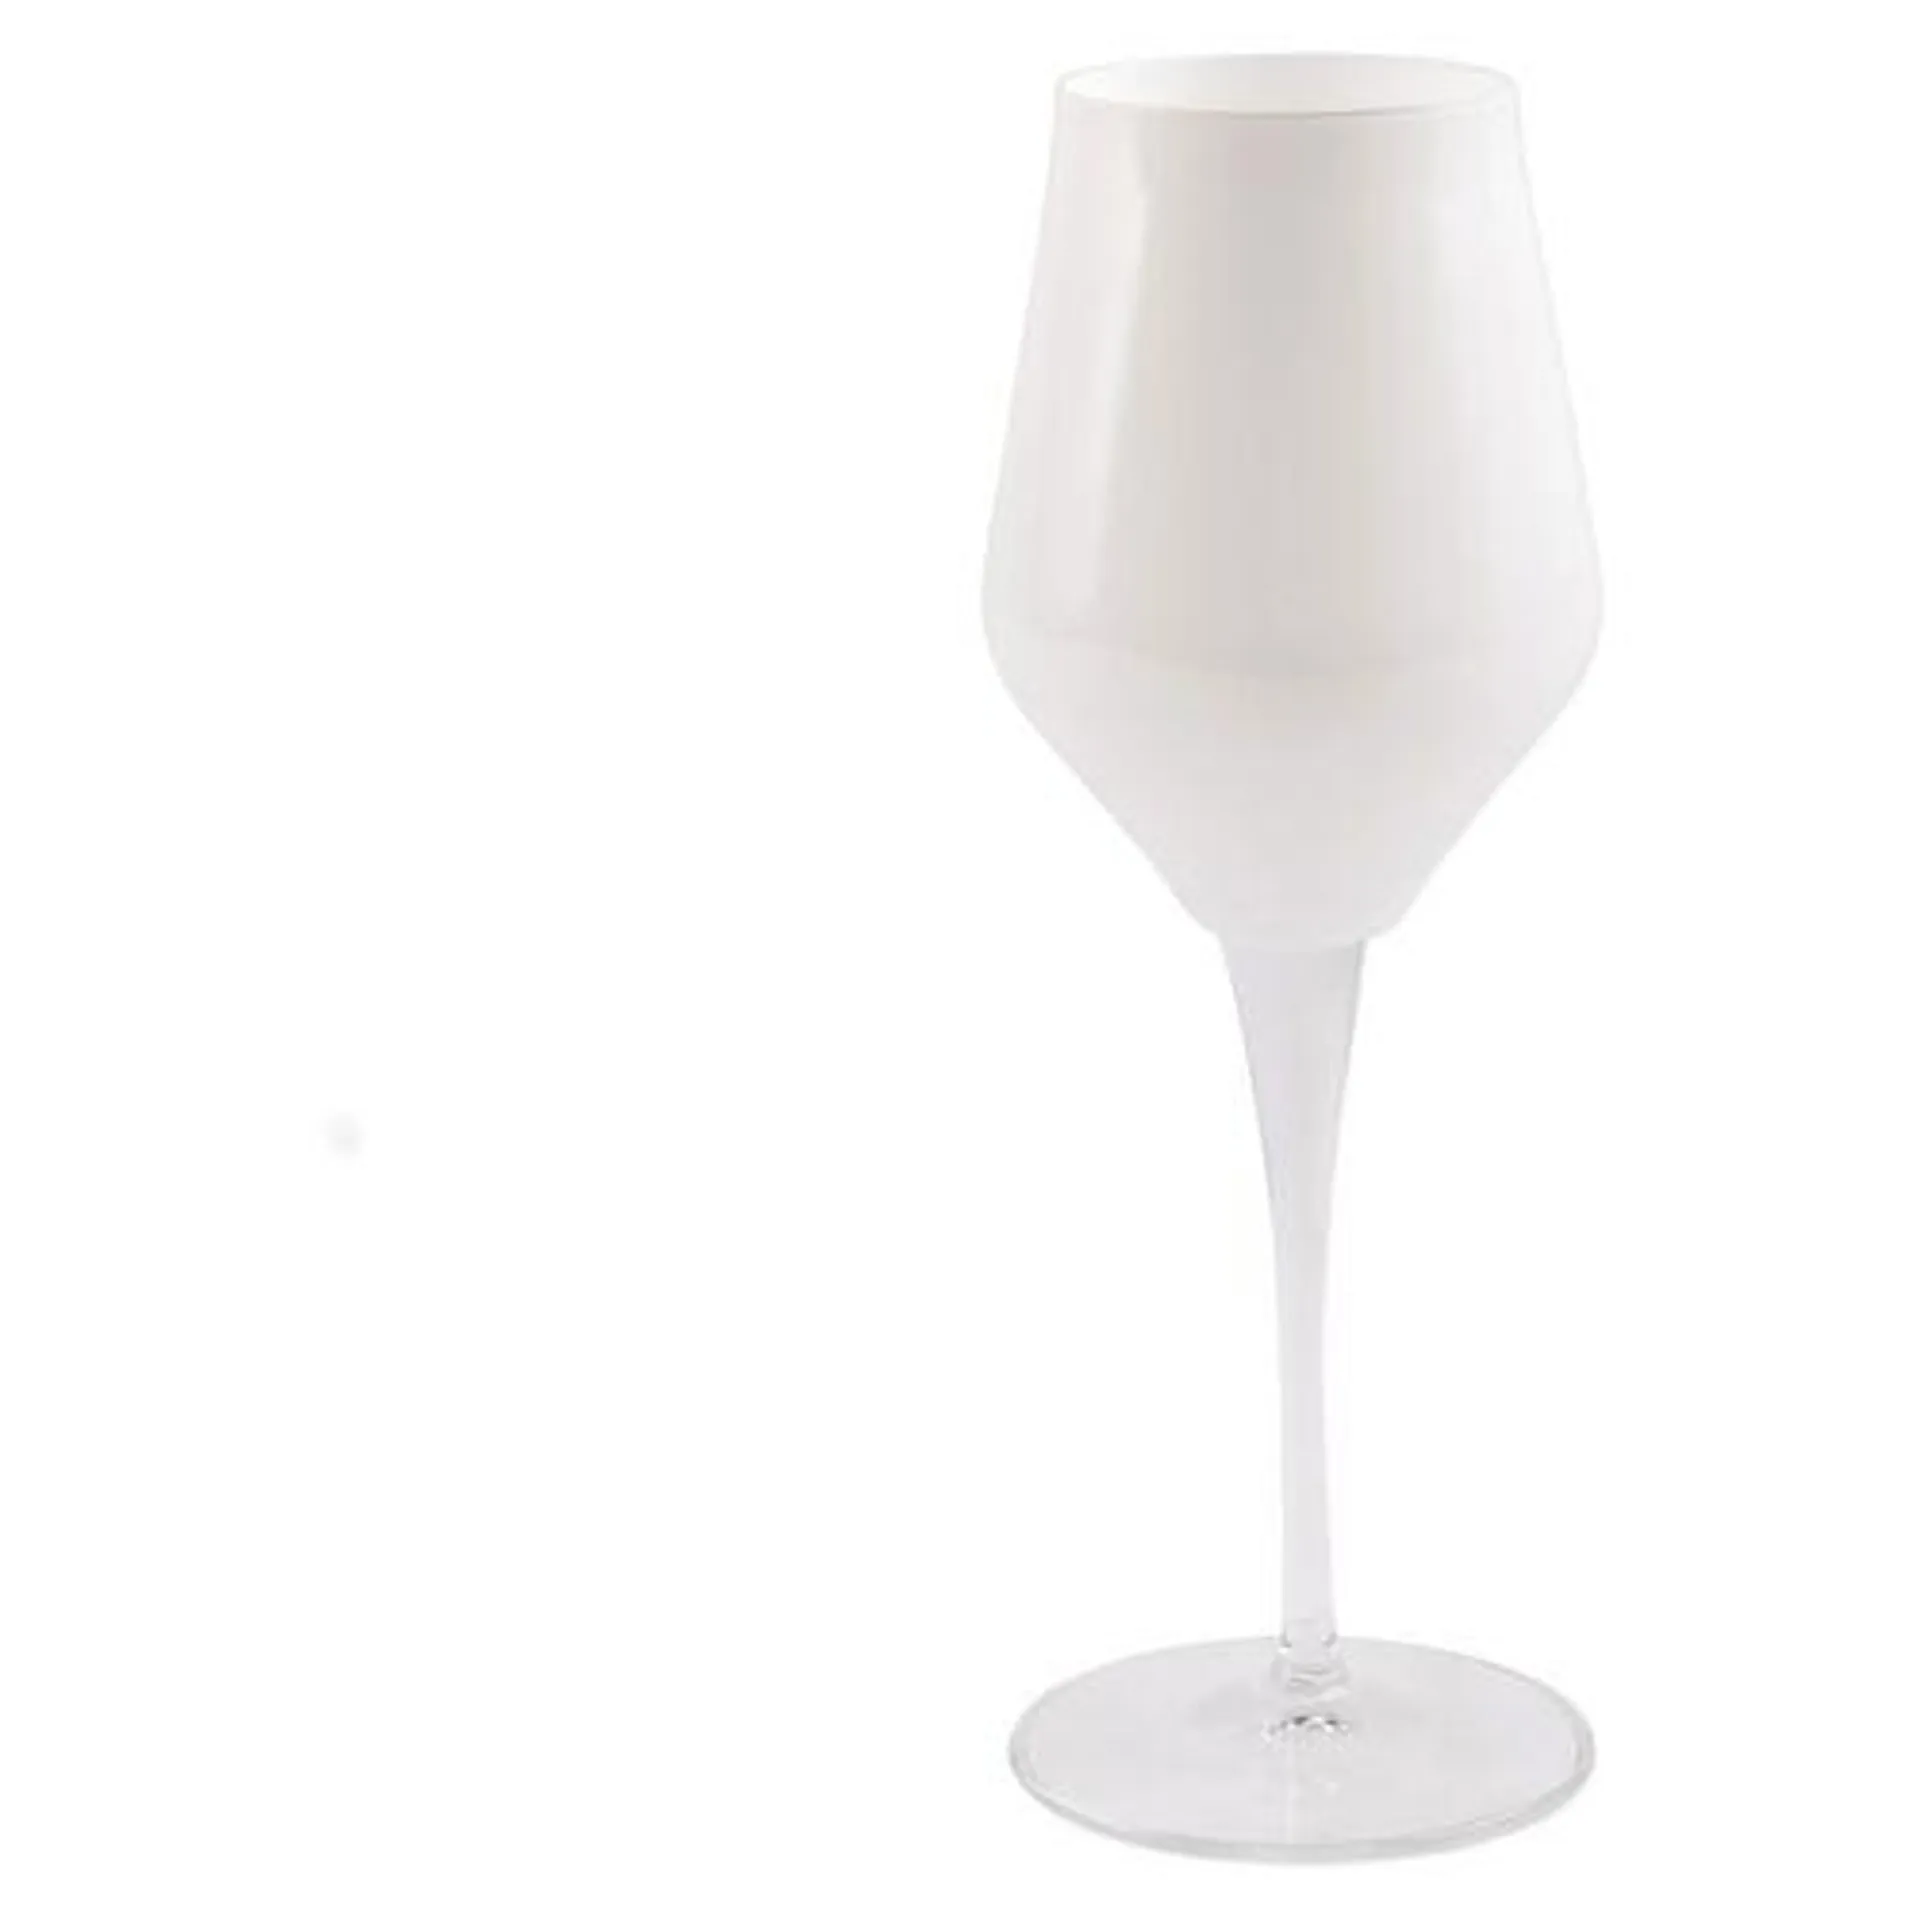 Contessa Wineglass, White